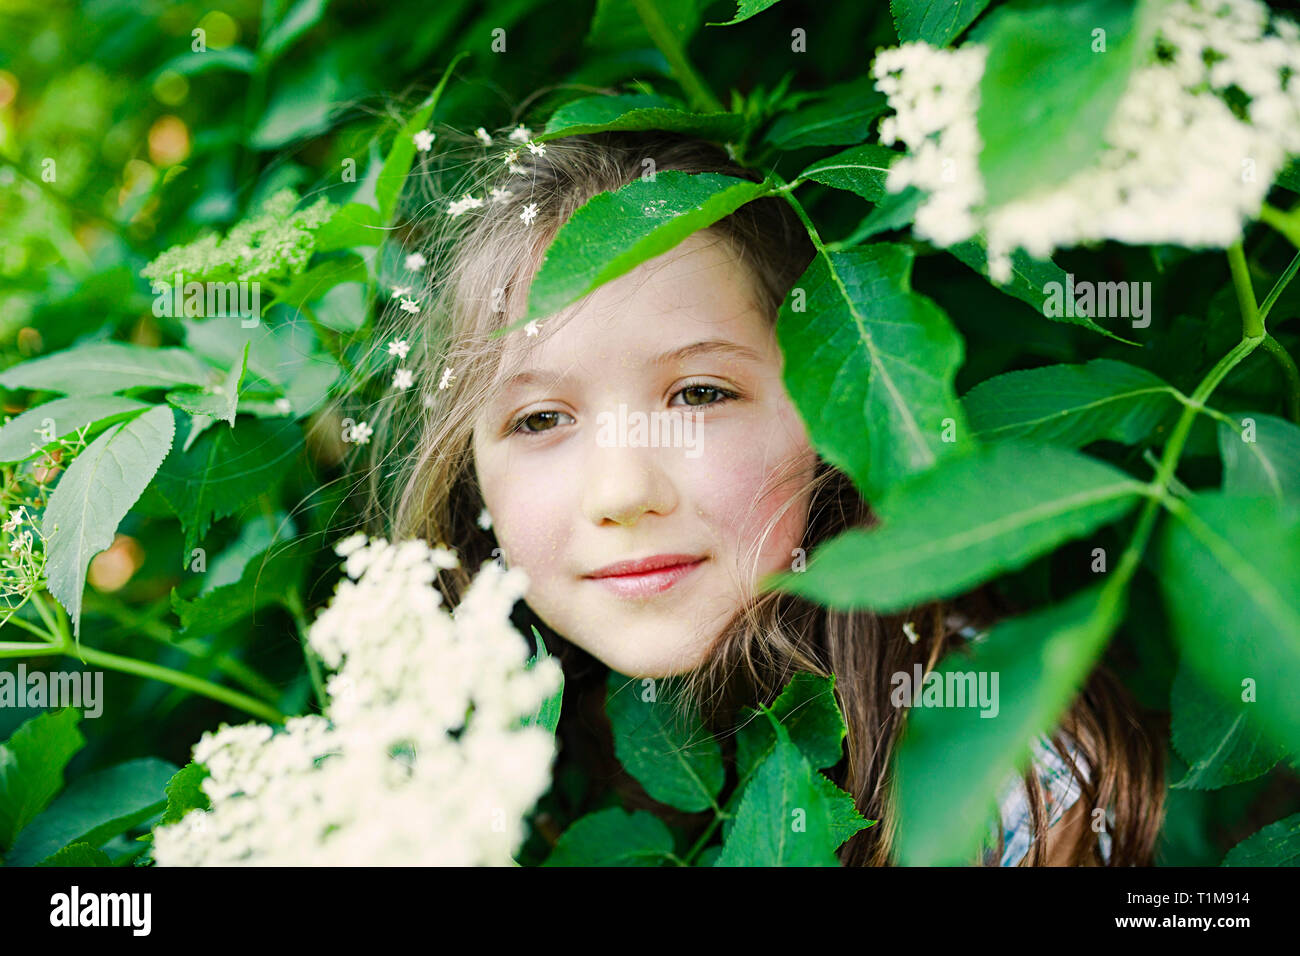 Portrait serene girl standing in flowering bush Stock Photo